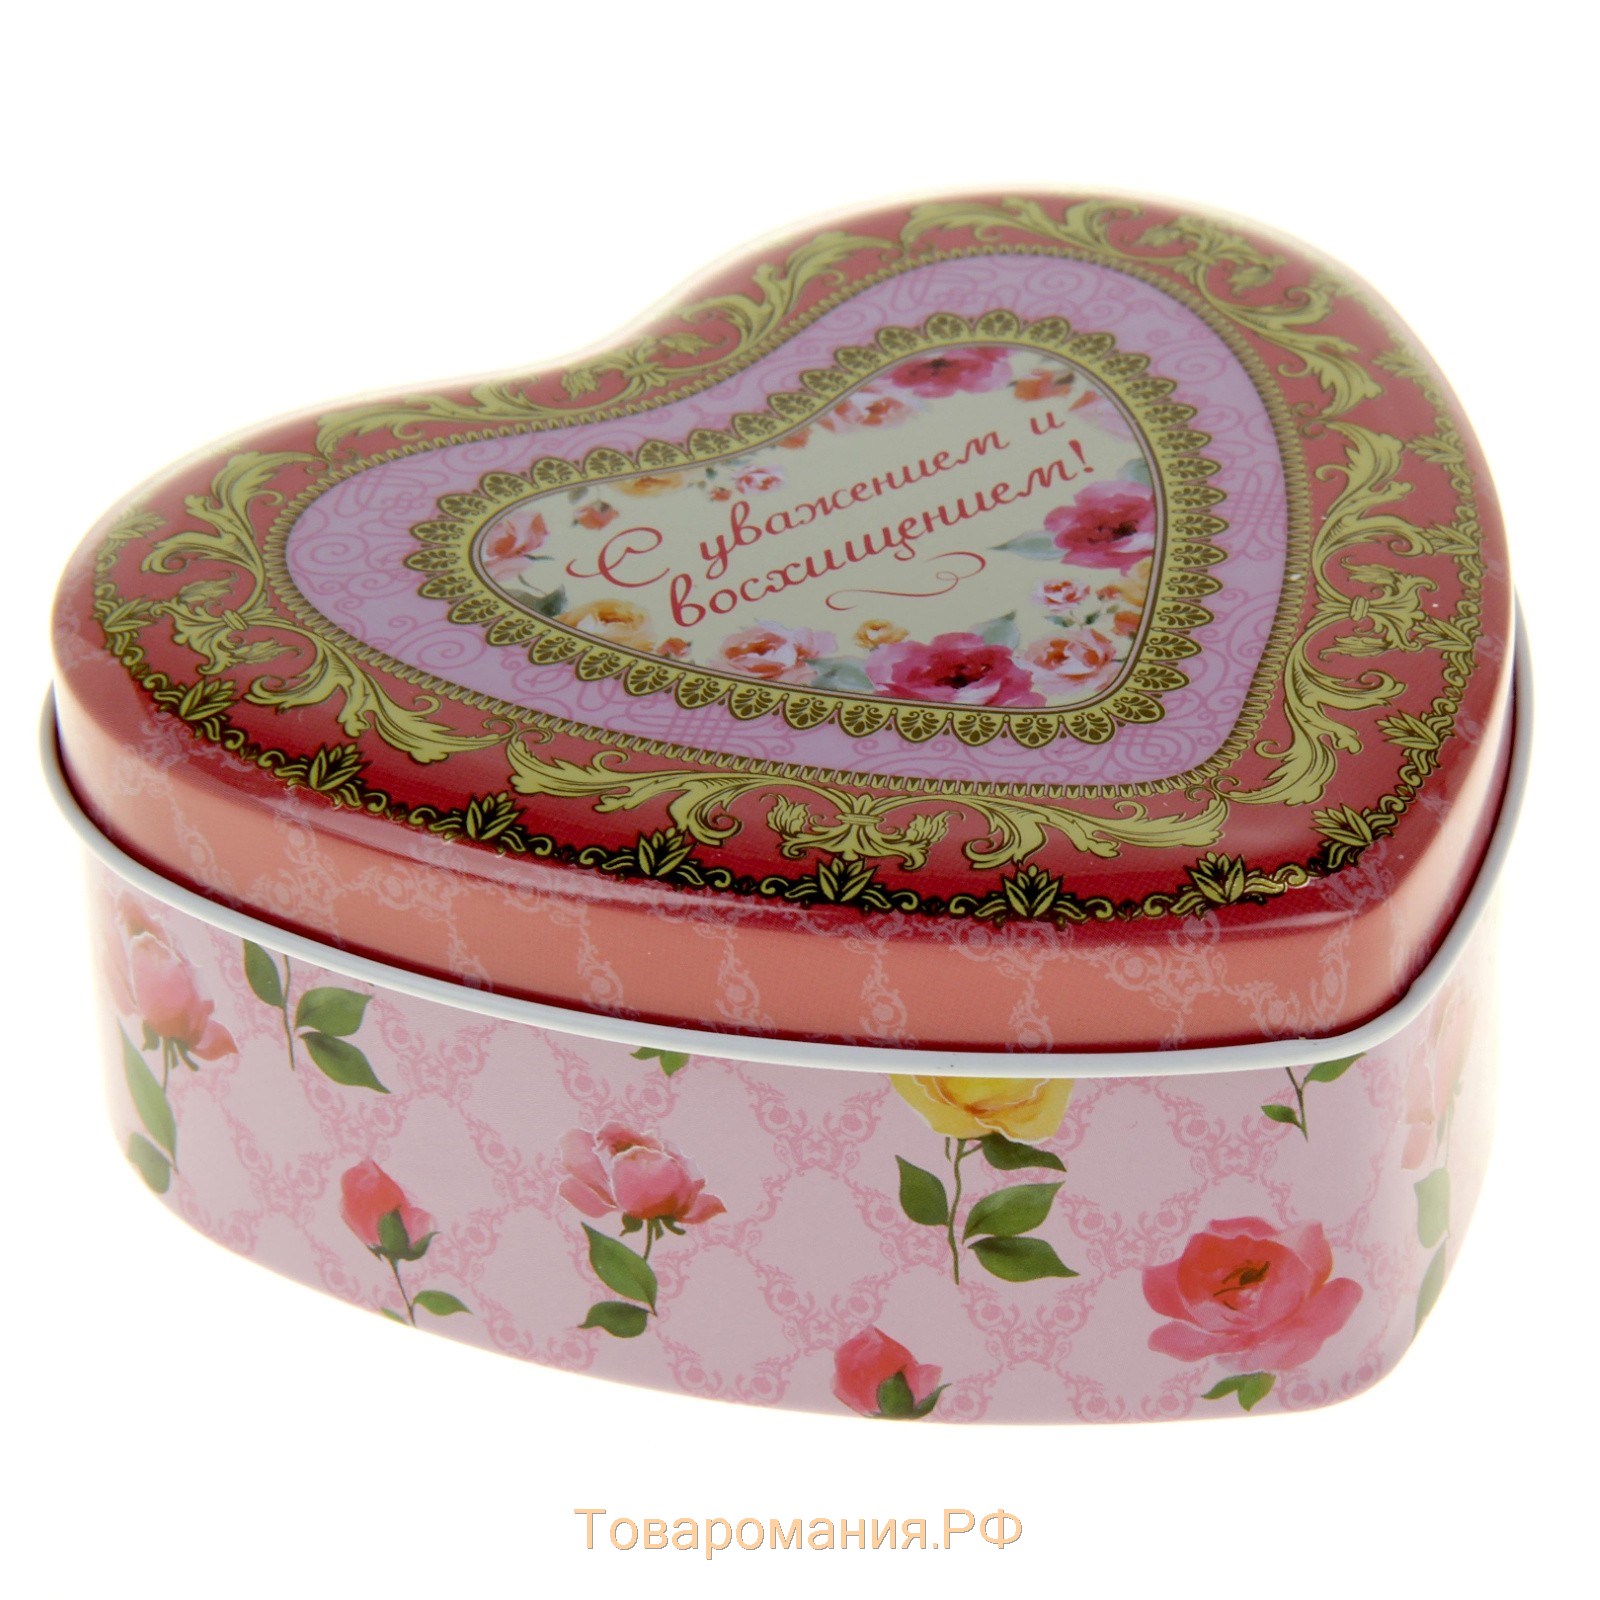 Набор мыльных лепестков в шкатулке-сердце "С уважением и восхищением": 5 бутонов, мыло-птичка, конфетти